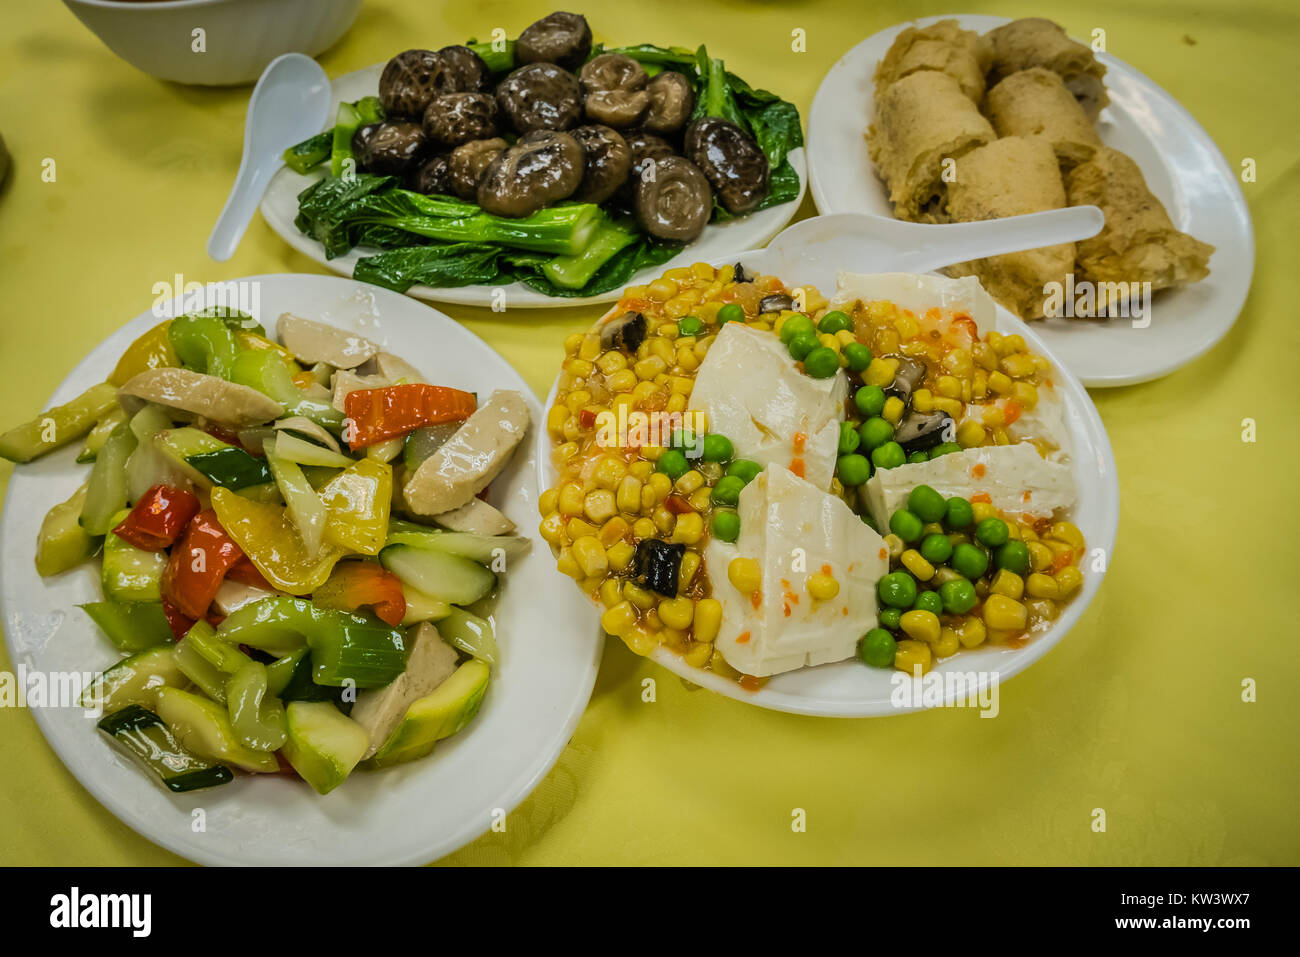 vegetarian meal at hong kong big buddha Stock Photo